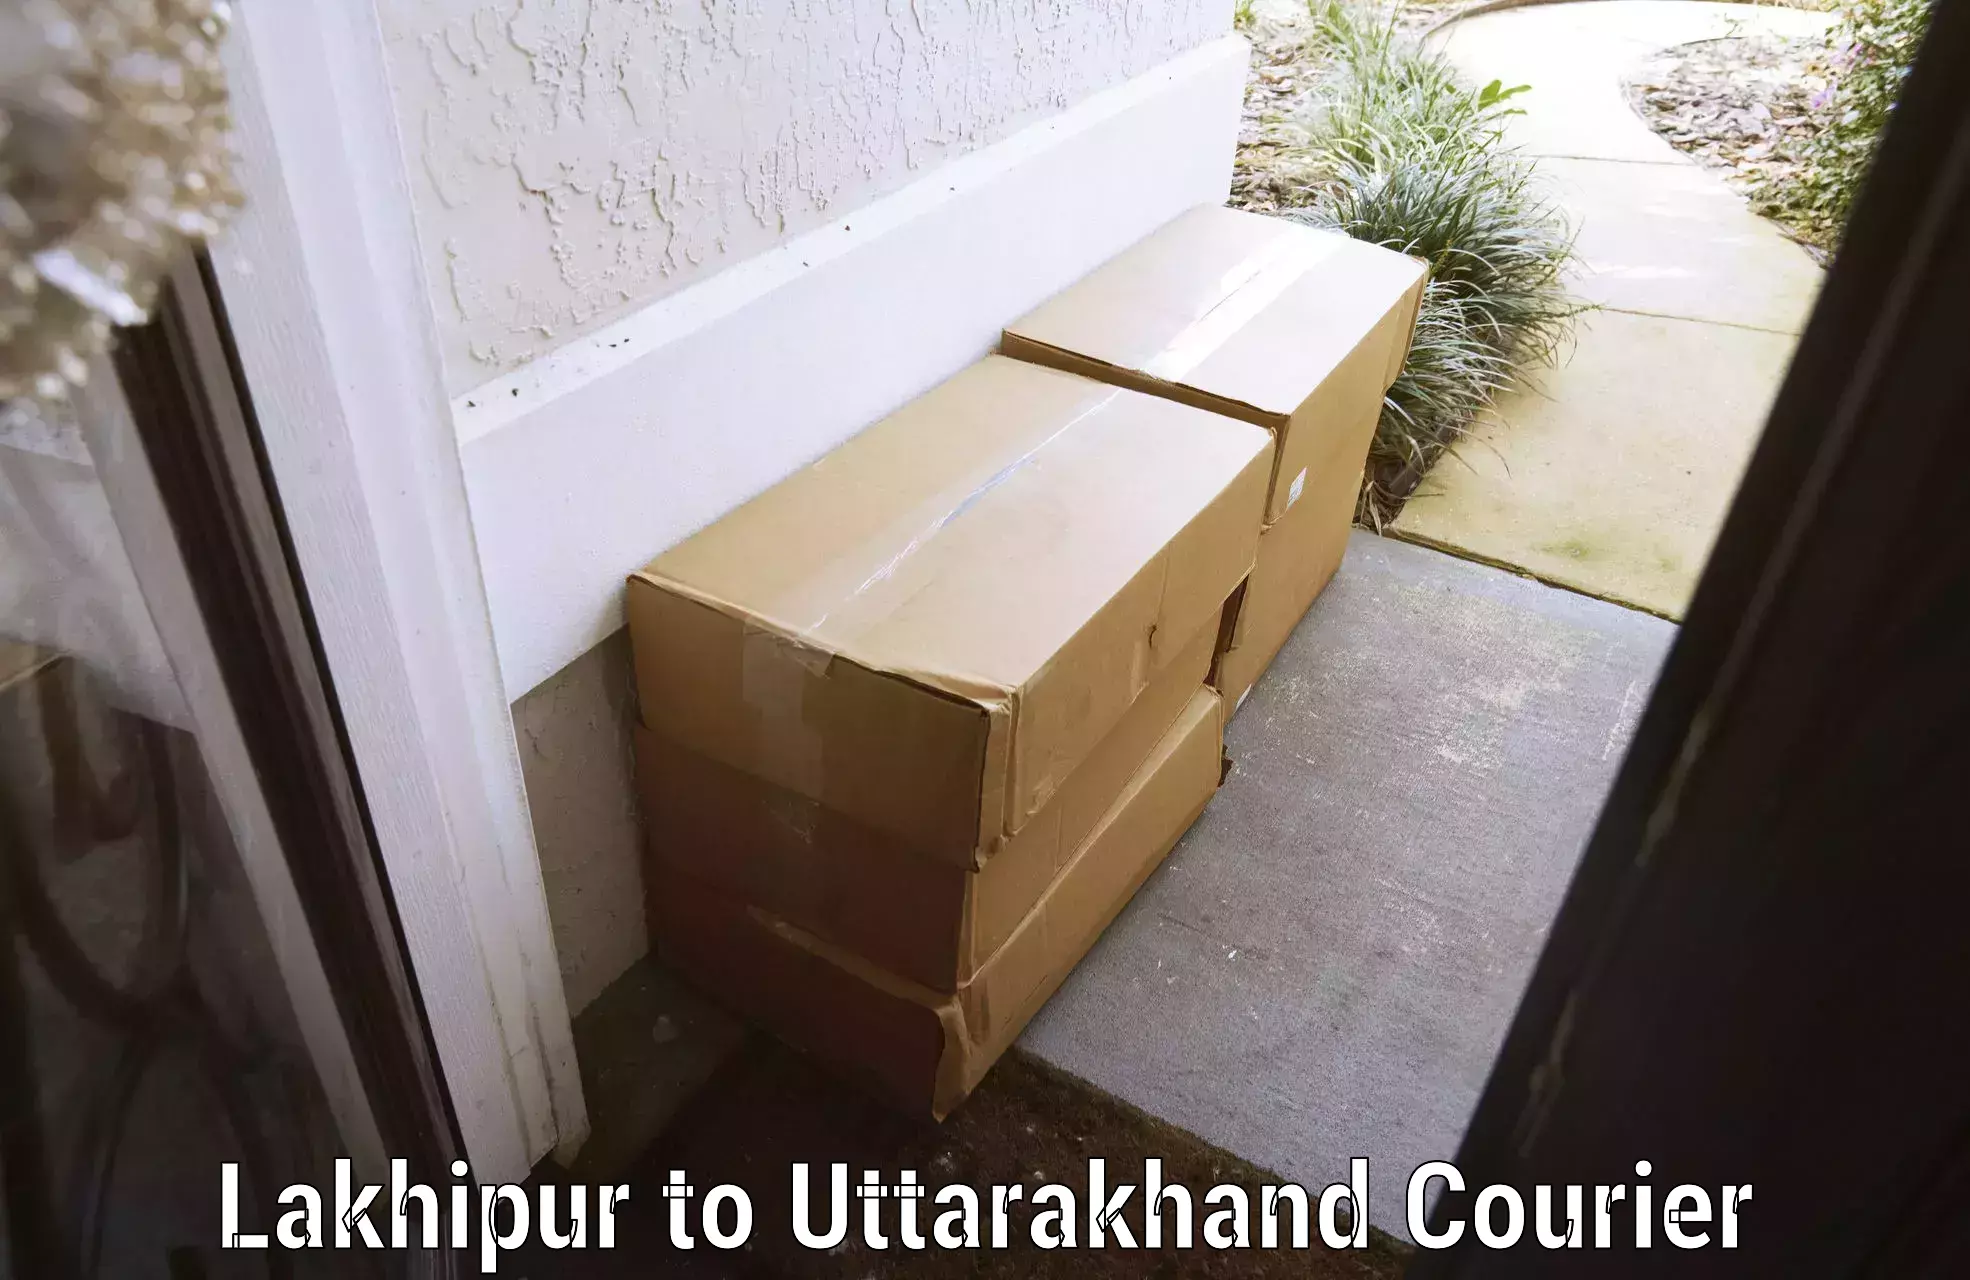 Luggage transport consultancy Lakhipur to Khatima